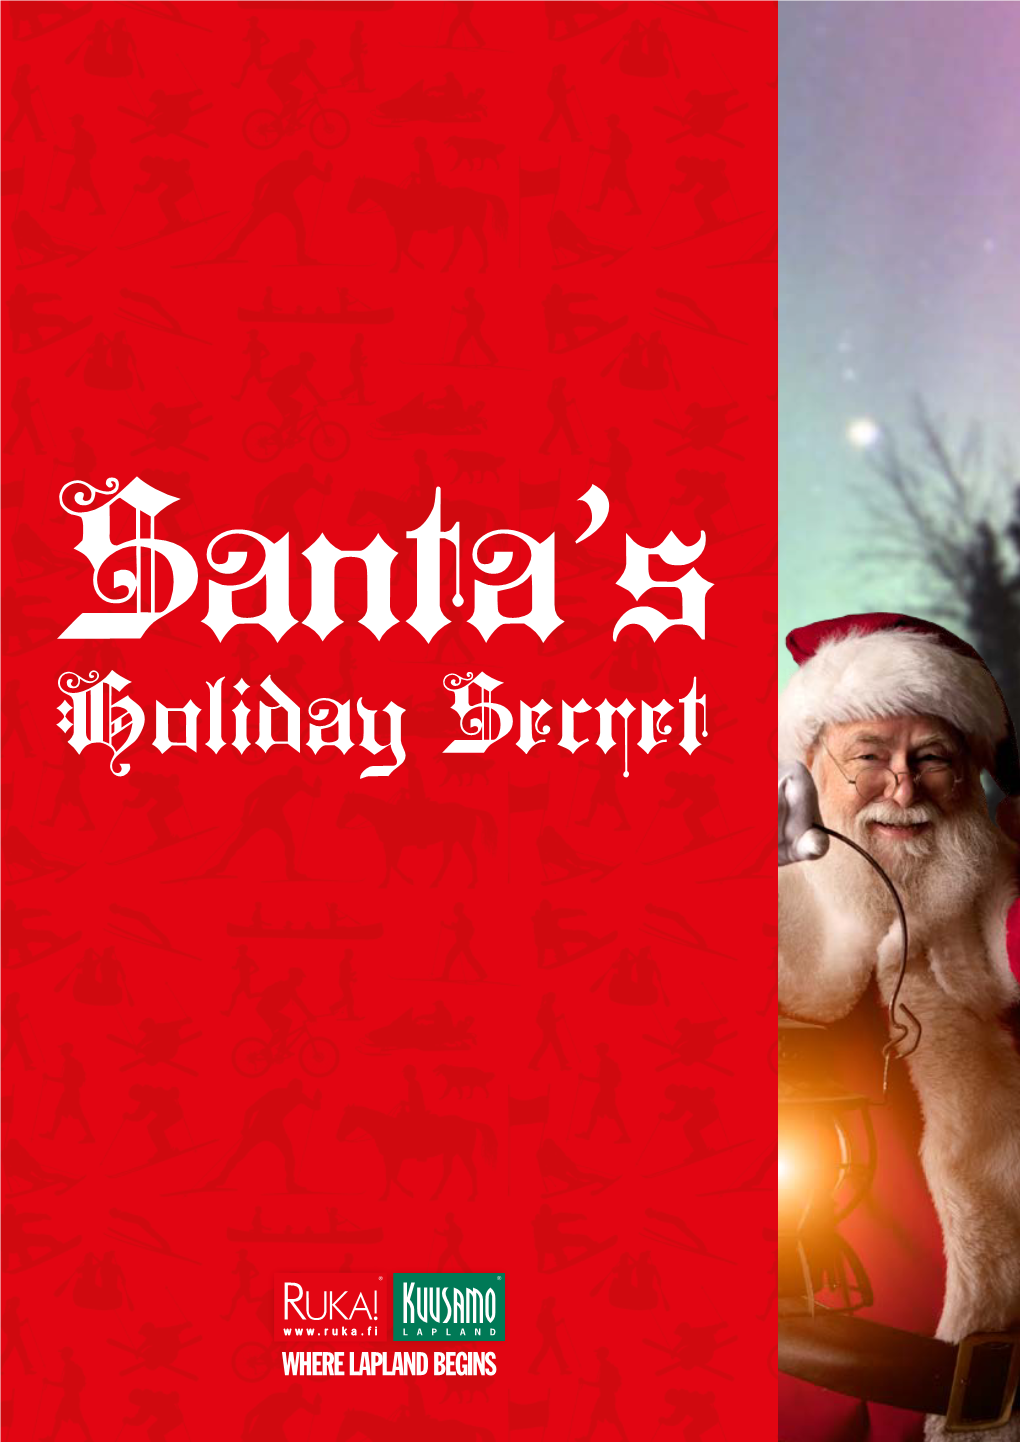 Take a Look at Santa's Holiday Secret